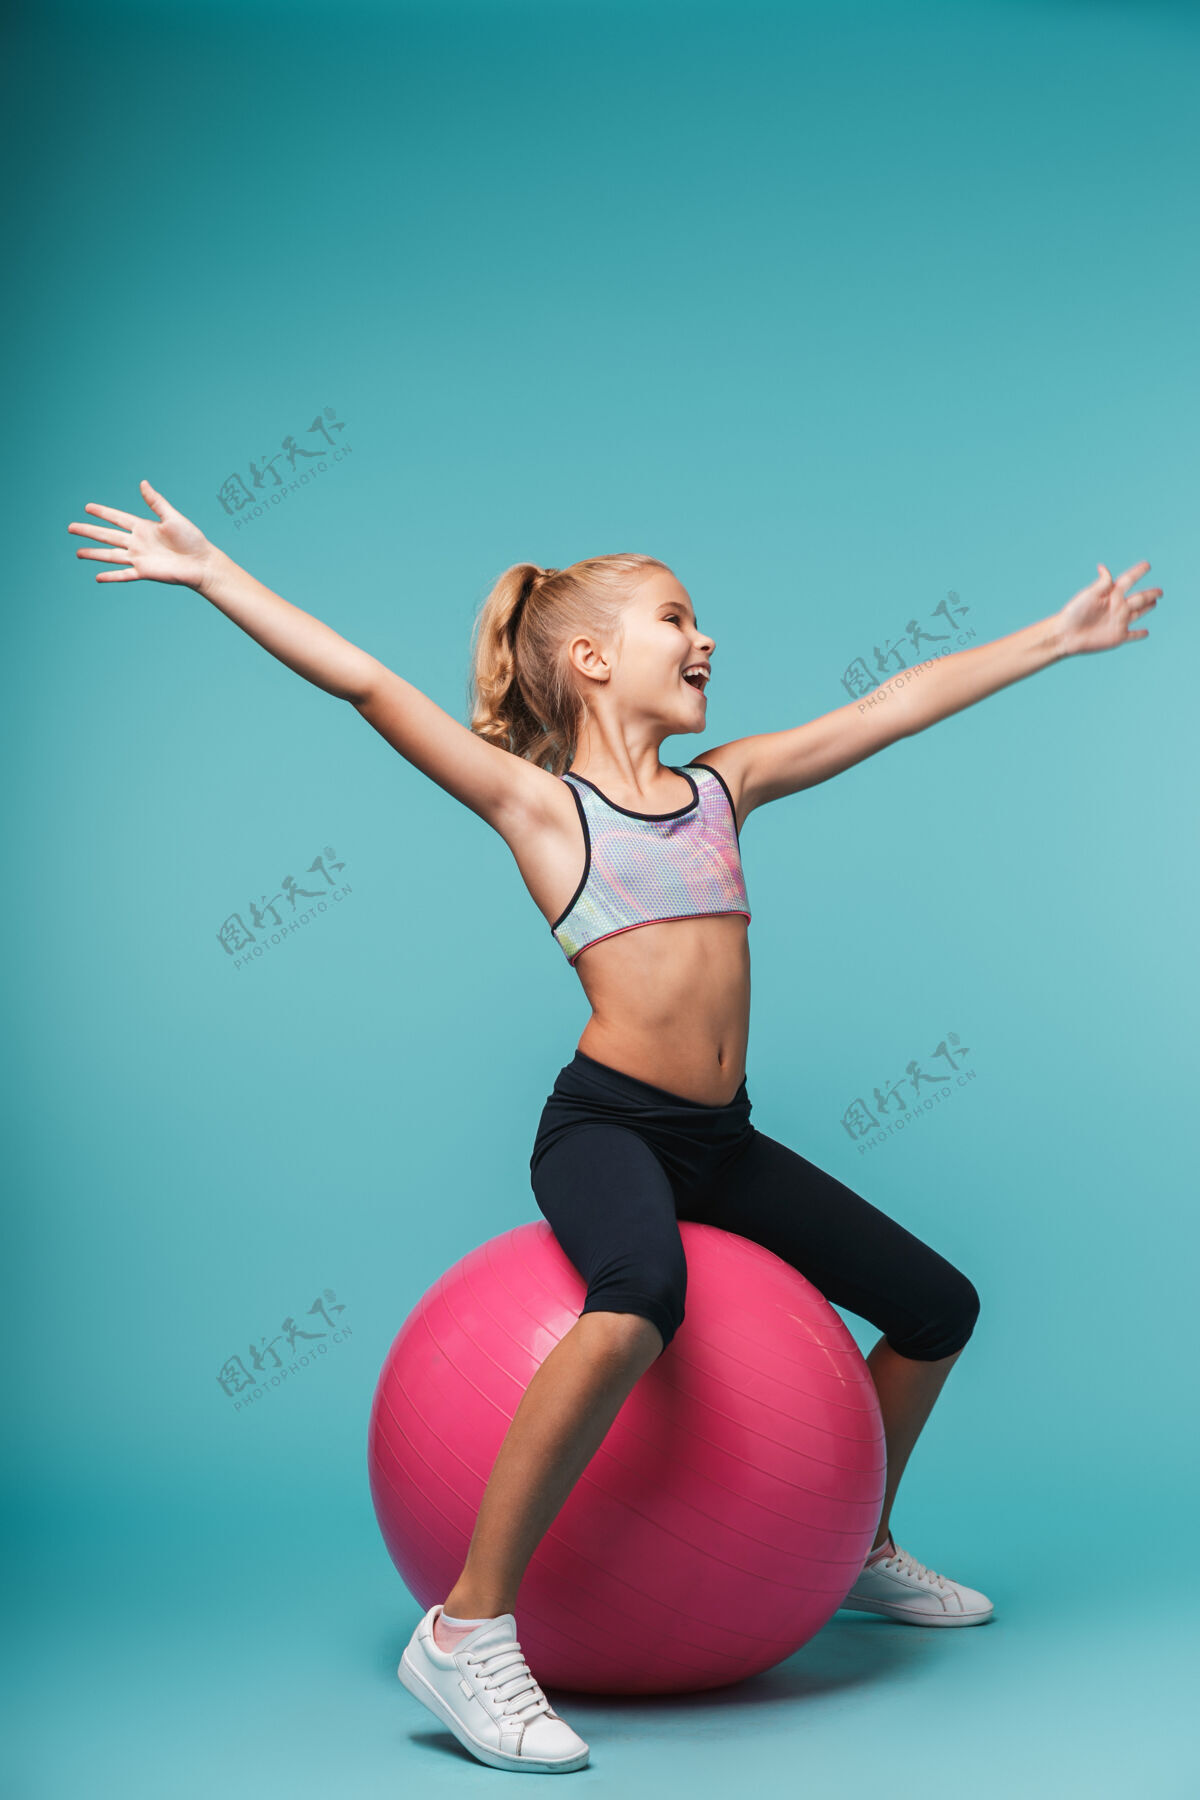 球快乐的小女孩穿着运动服和健身球隔着蓝色的墙做运动孩子运动体操